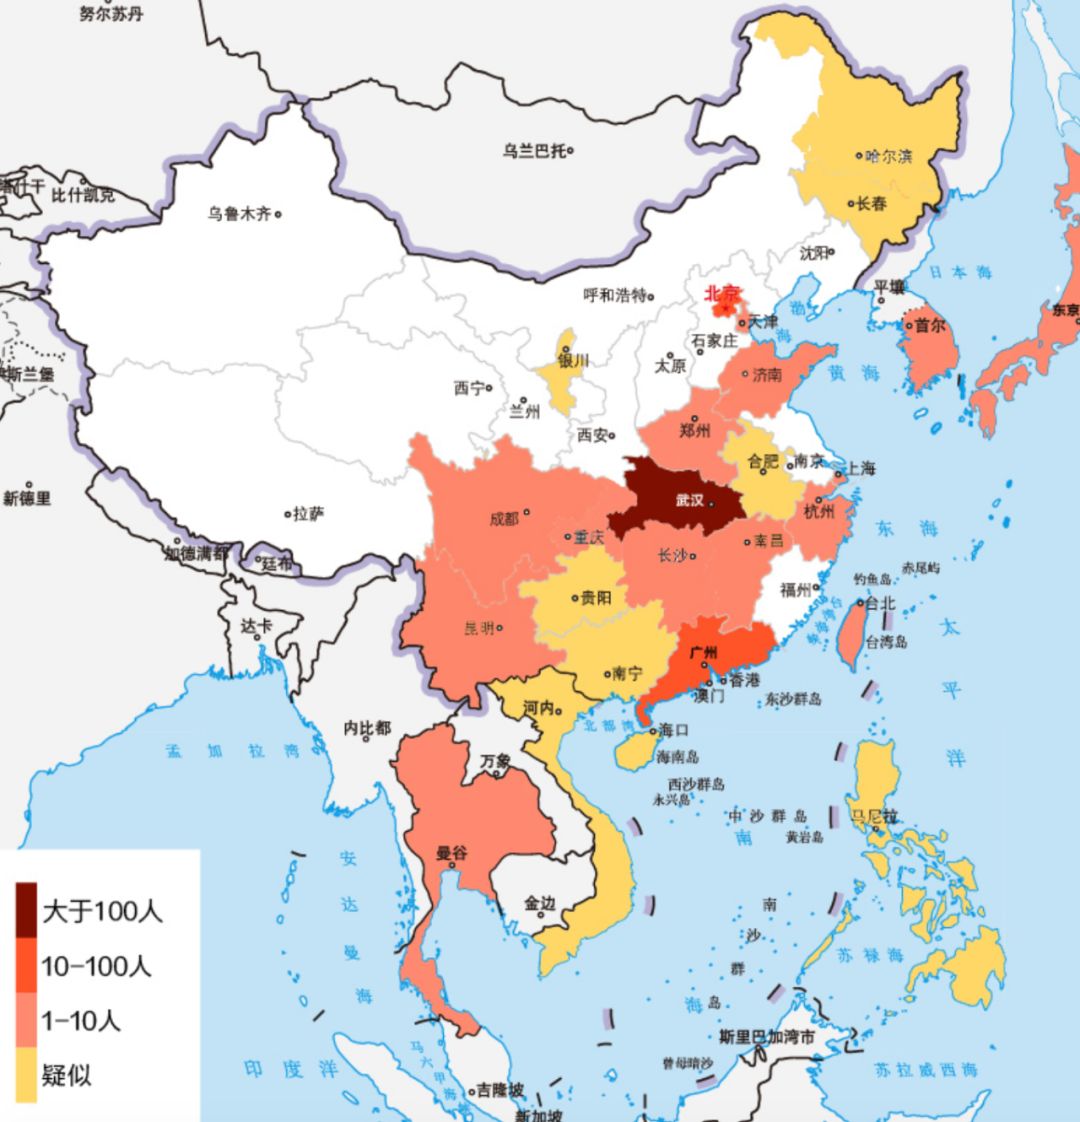 中国确诊或疑似新型冠状病毒地区地图